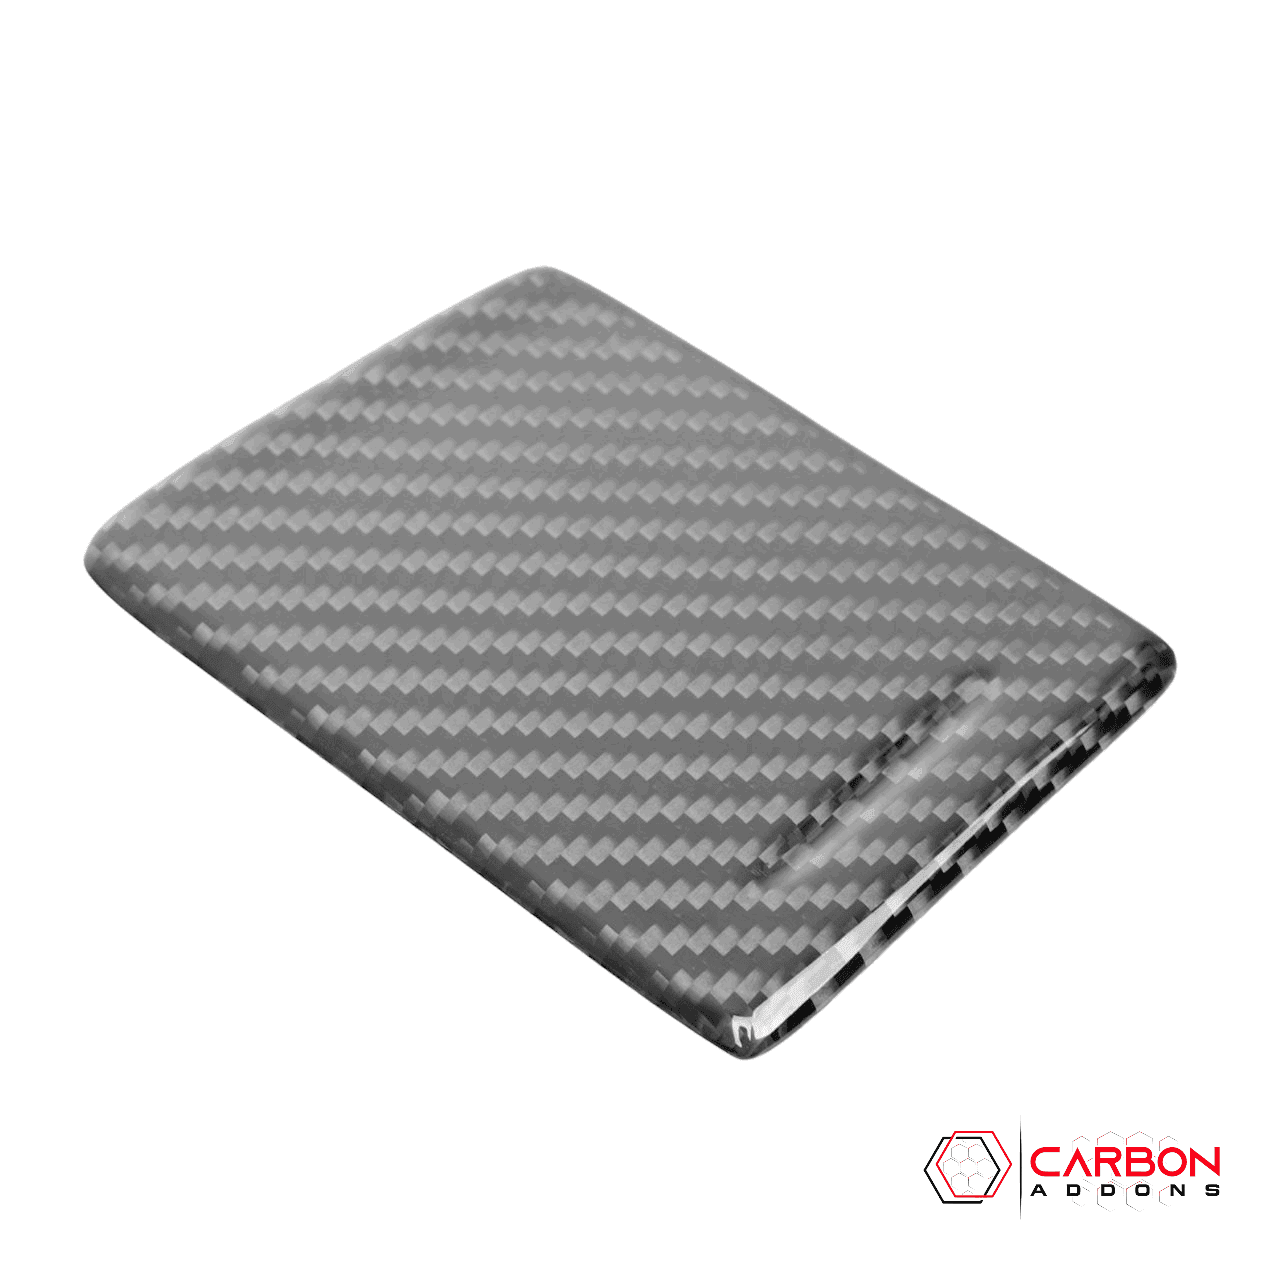 C7 Corvette 2014-2019 Carbon Fiber Center Console Ashtray Cover - carbonaddons Carbon Fiber Parts, Accessories, Upgrades, Mods